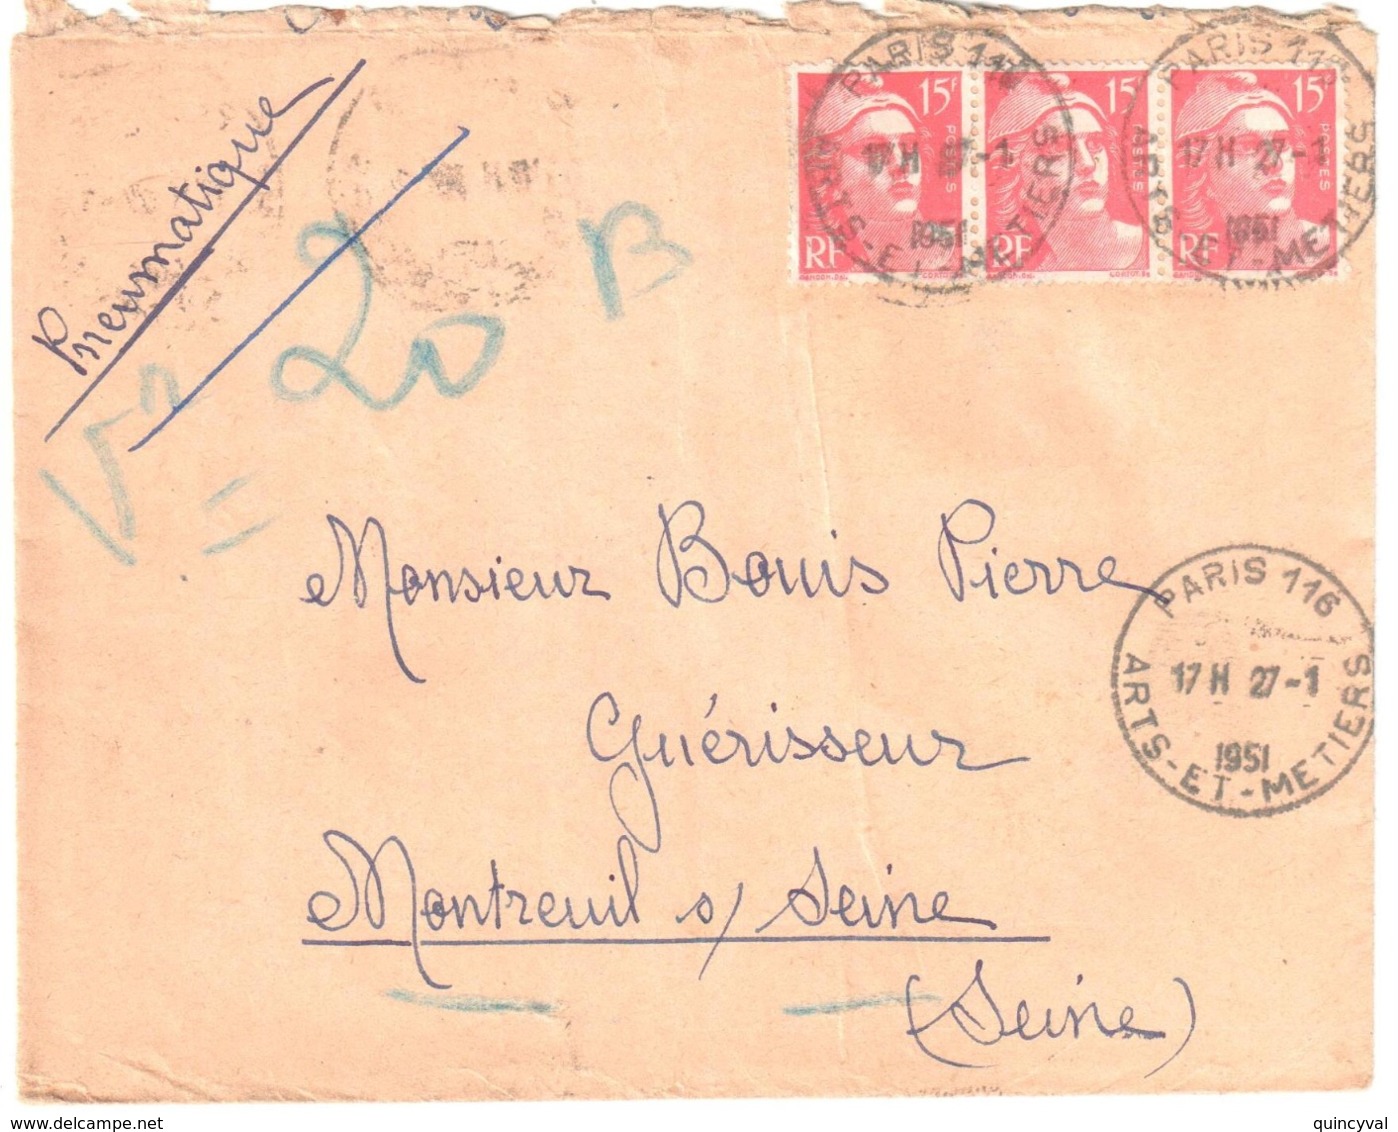 PARIS 116 Arts-et-Métiers 15 F Gandon Rouge Yv 813 Ob 27 1 1955 Dest Montreuil Sous Bois - Storia Postale